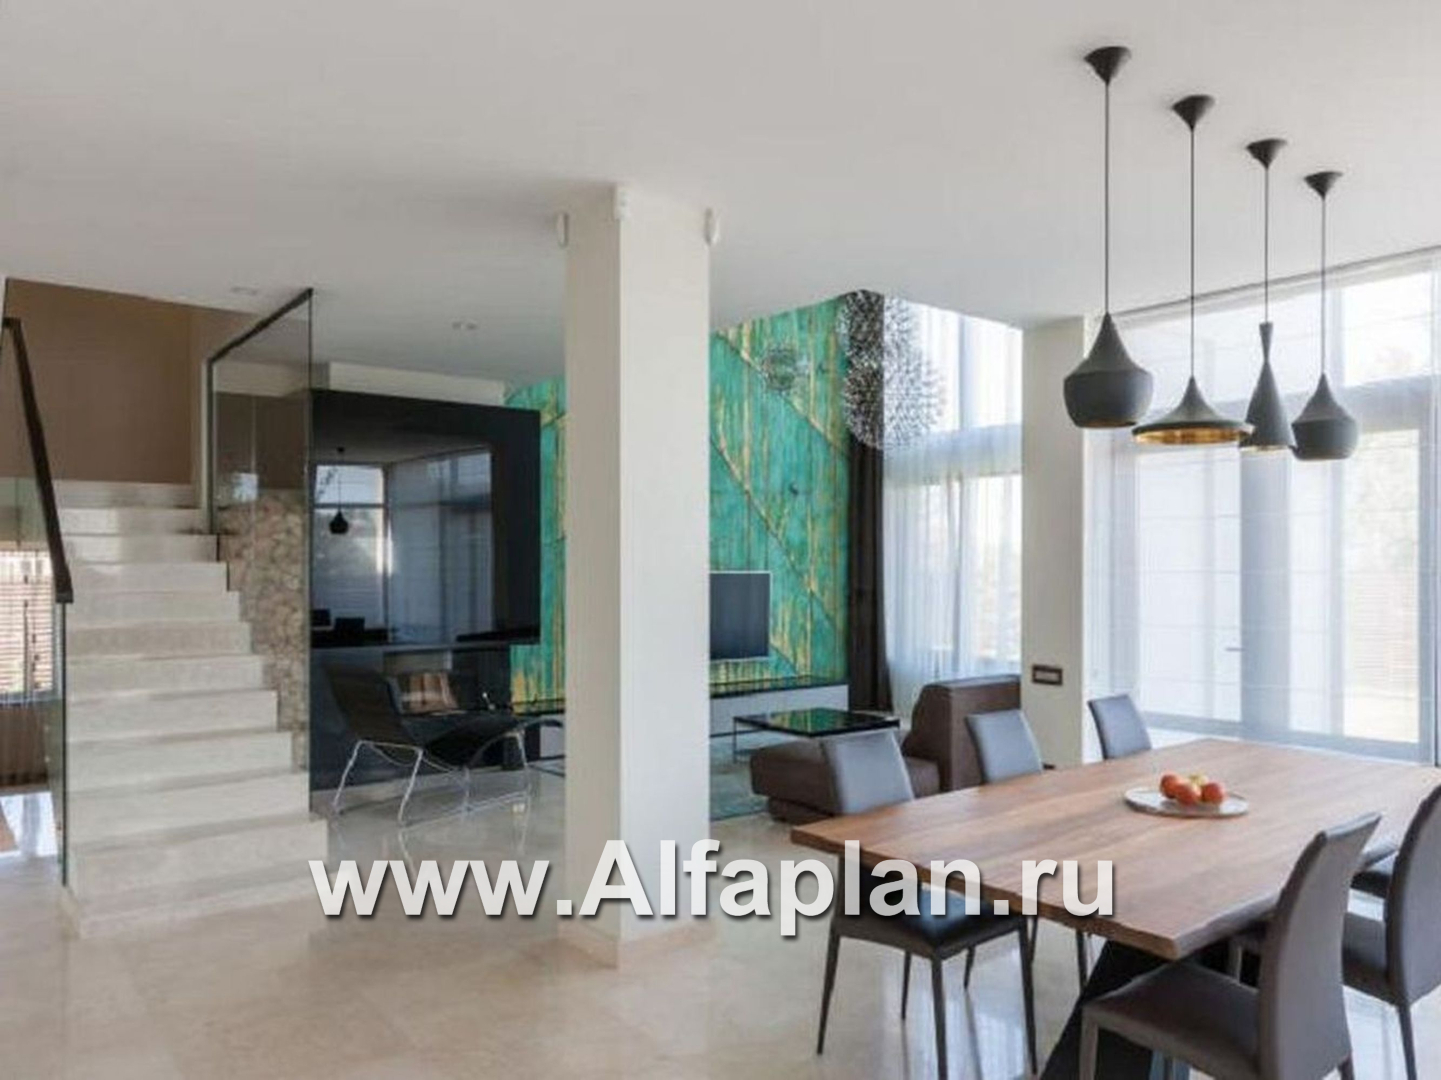 Проекты домов Альфаплан - «Современник» - коттедж с панорамными окнами - дополнительное изображение №5